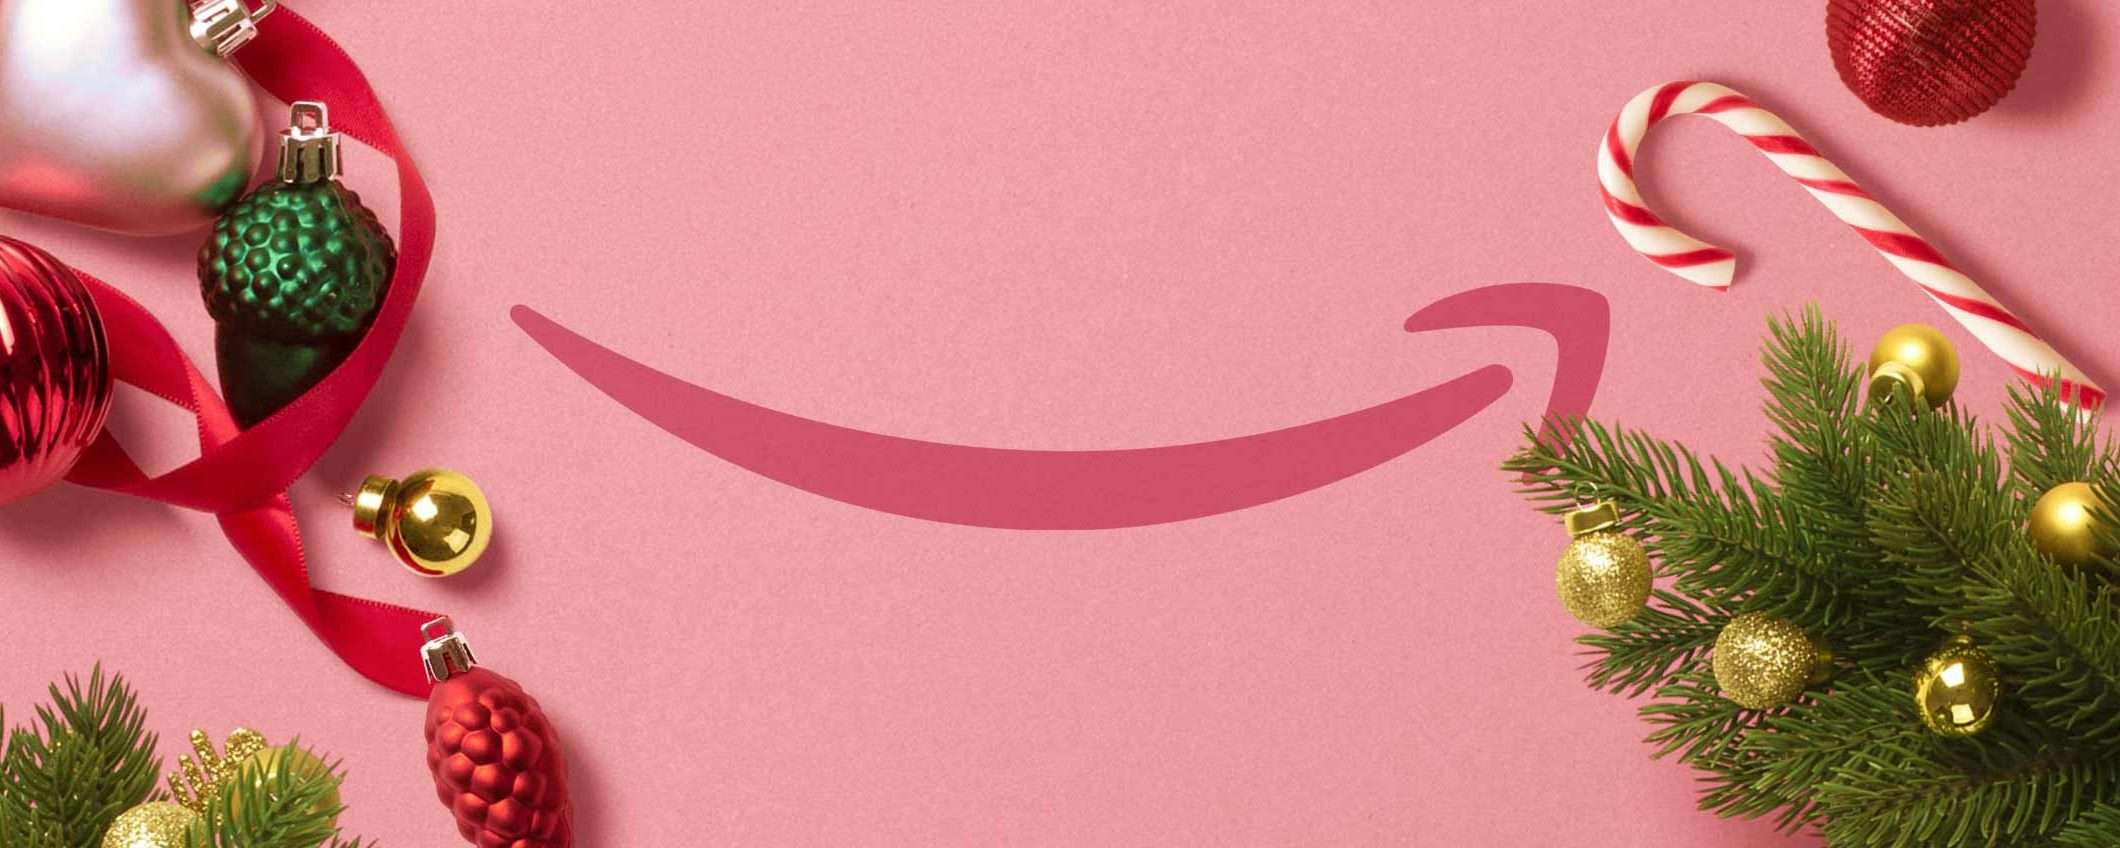 Amazon: codici promo per tutti in vista del Natale